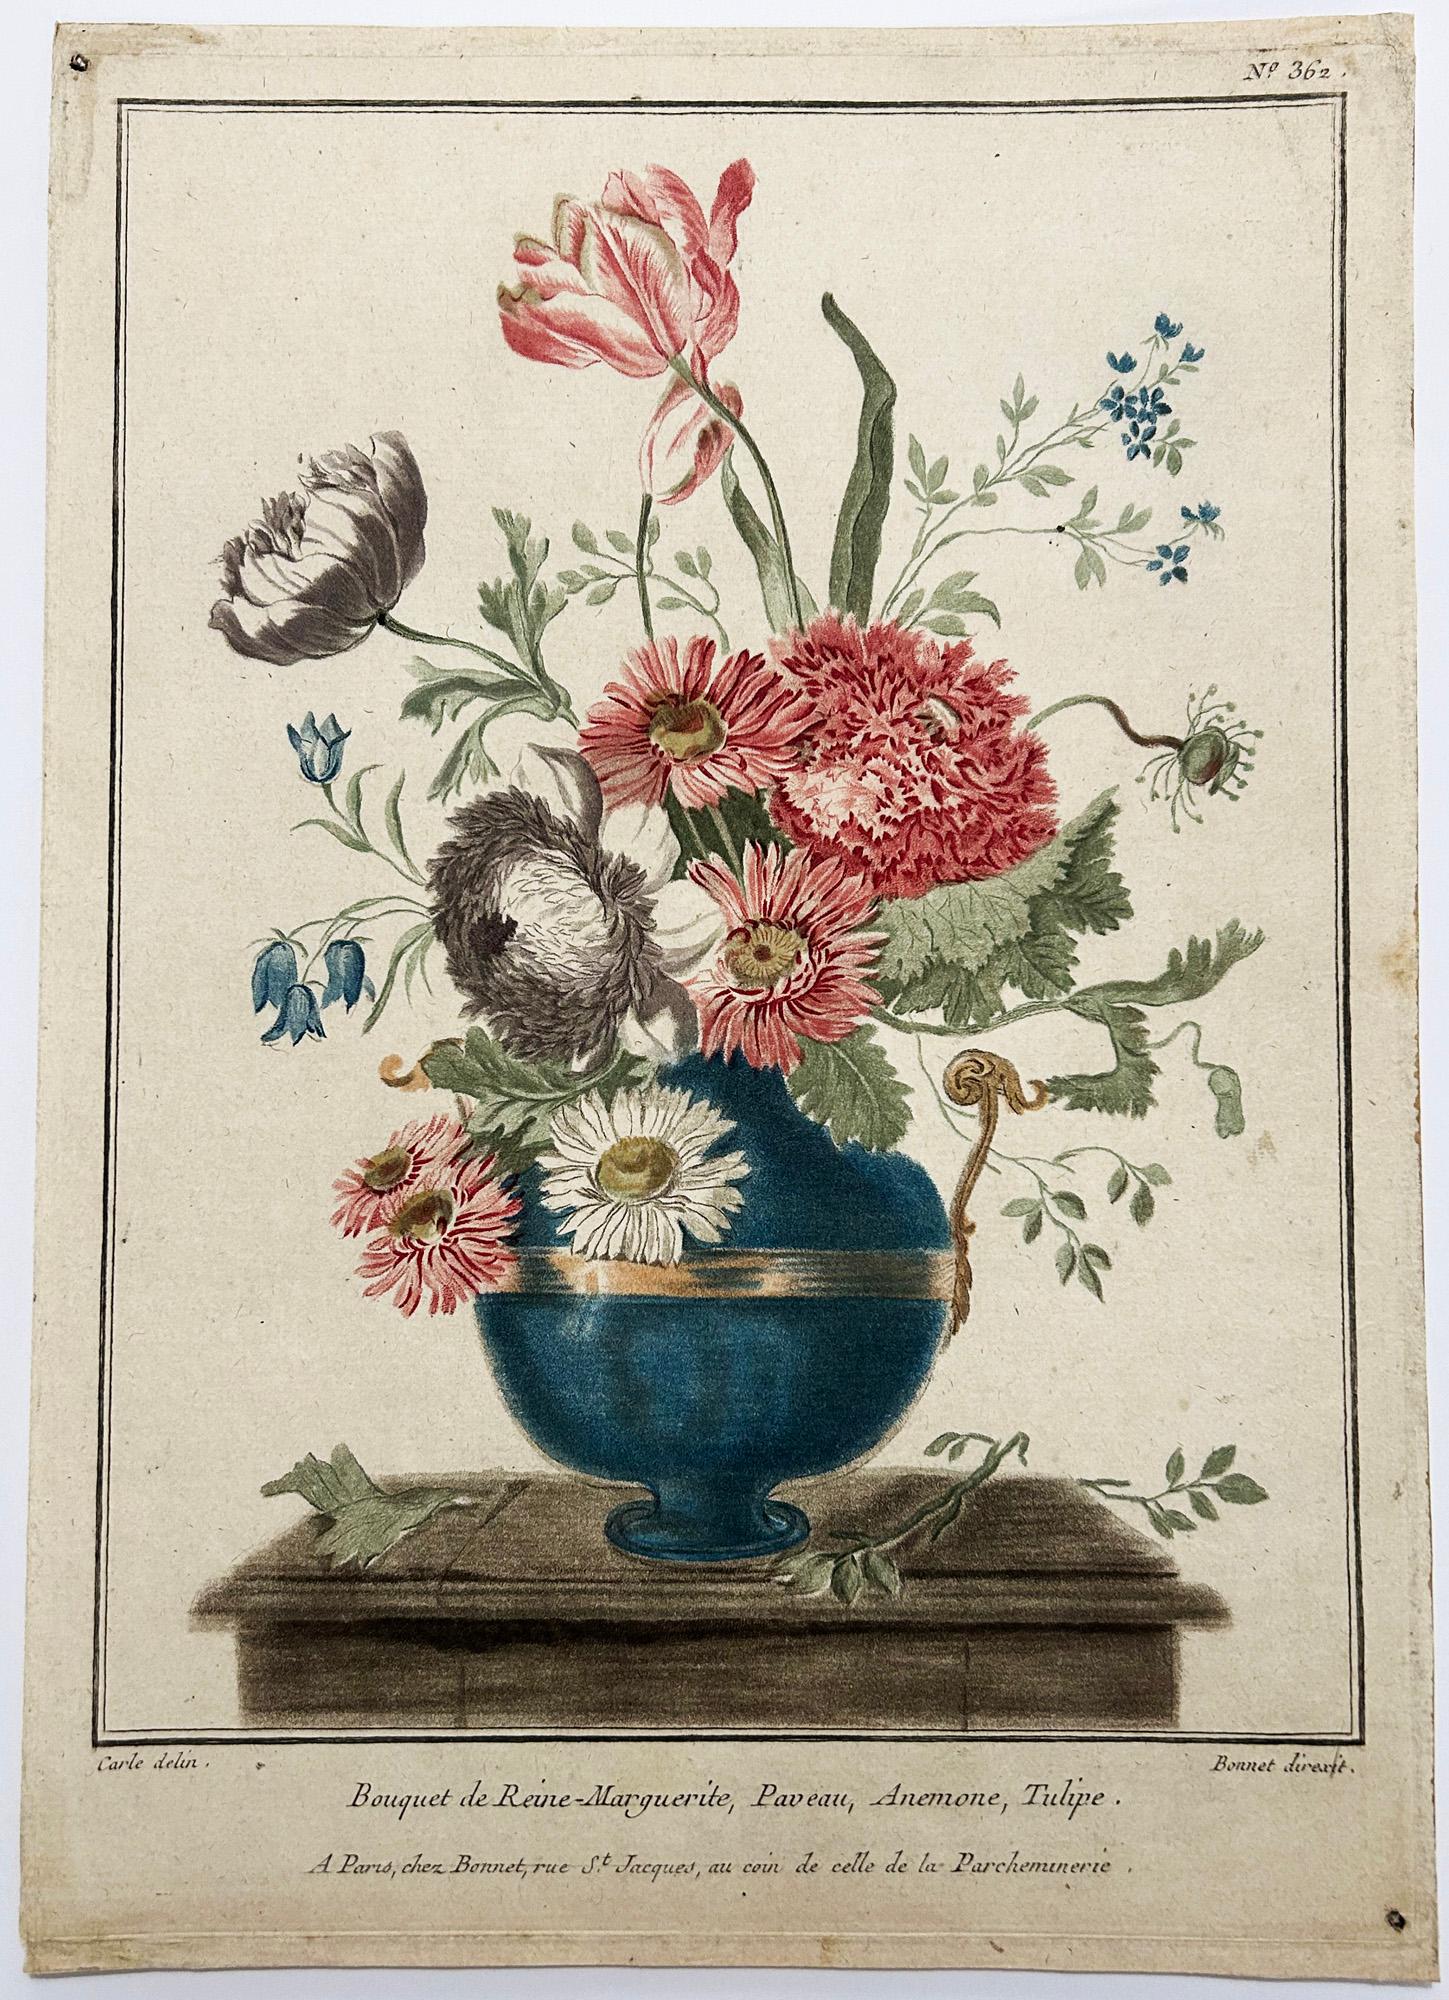 Bouquet de Reine-Marguerite, Paveau, Anémone, Tulipe. - Print by Louis Marin Bonnet